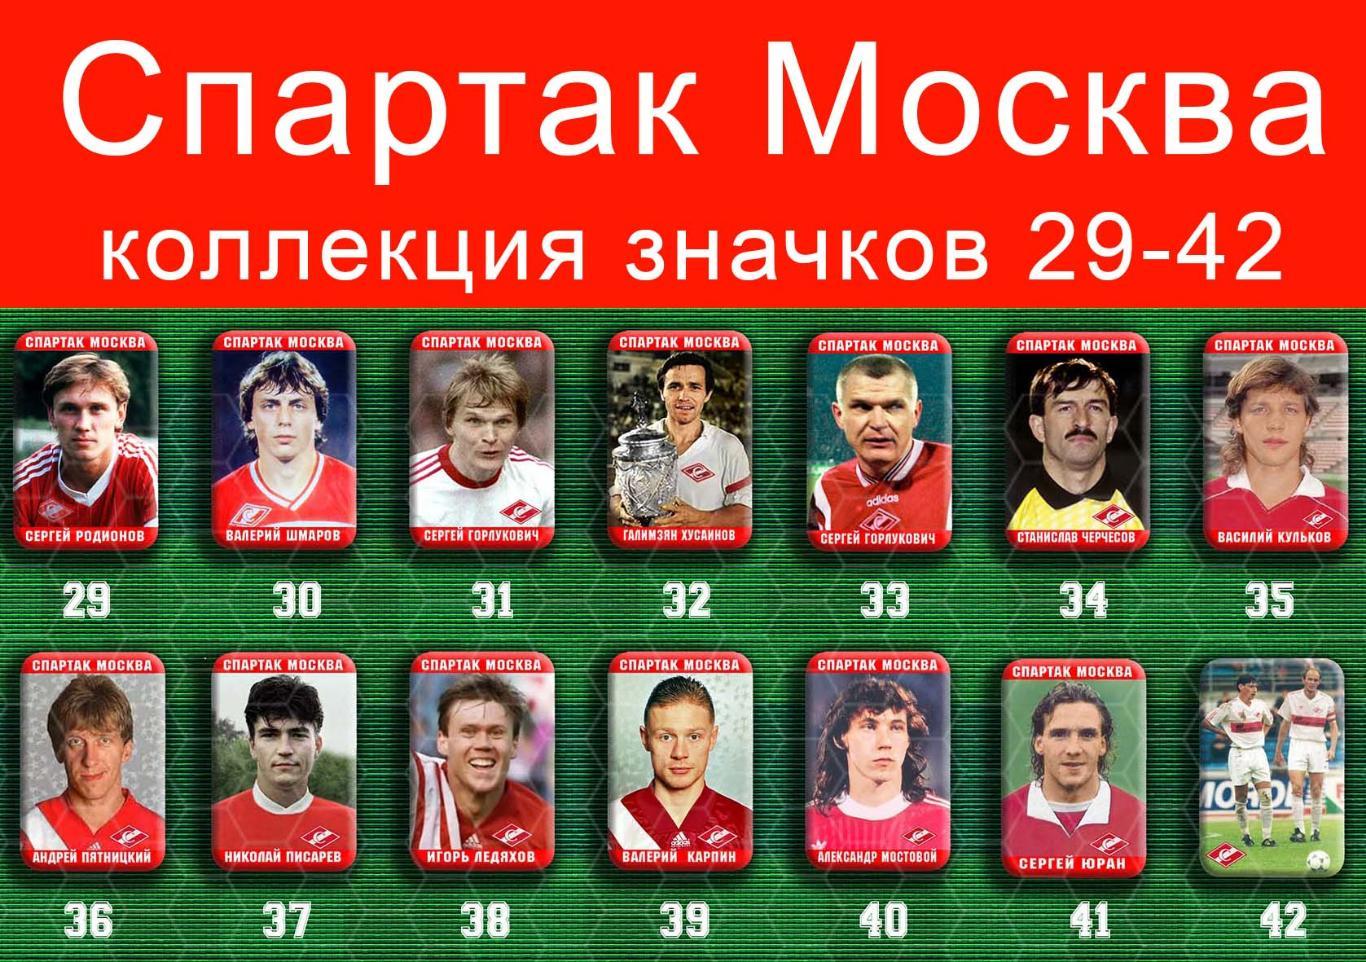 Спартак Москва 159 значков - 29-42